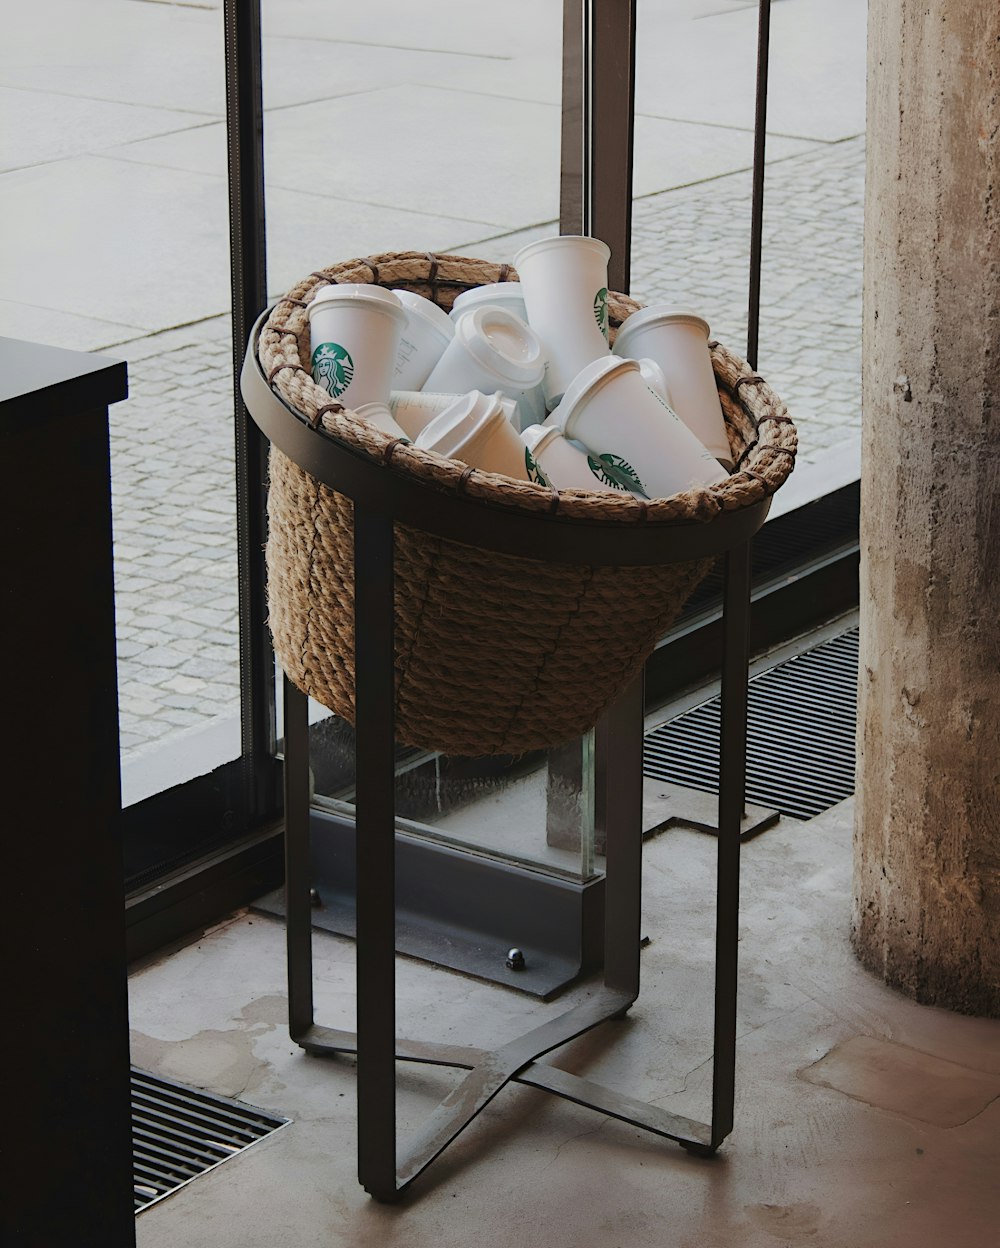 un cesto pieno di tazze sedute sopra un supporto di metallo